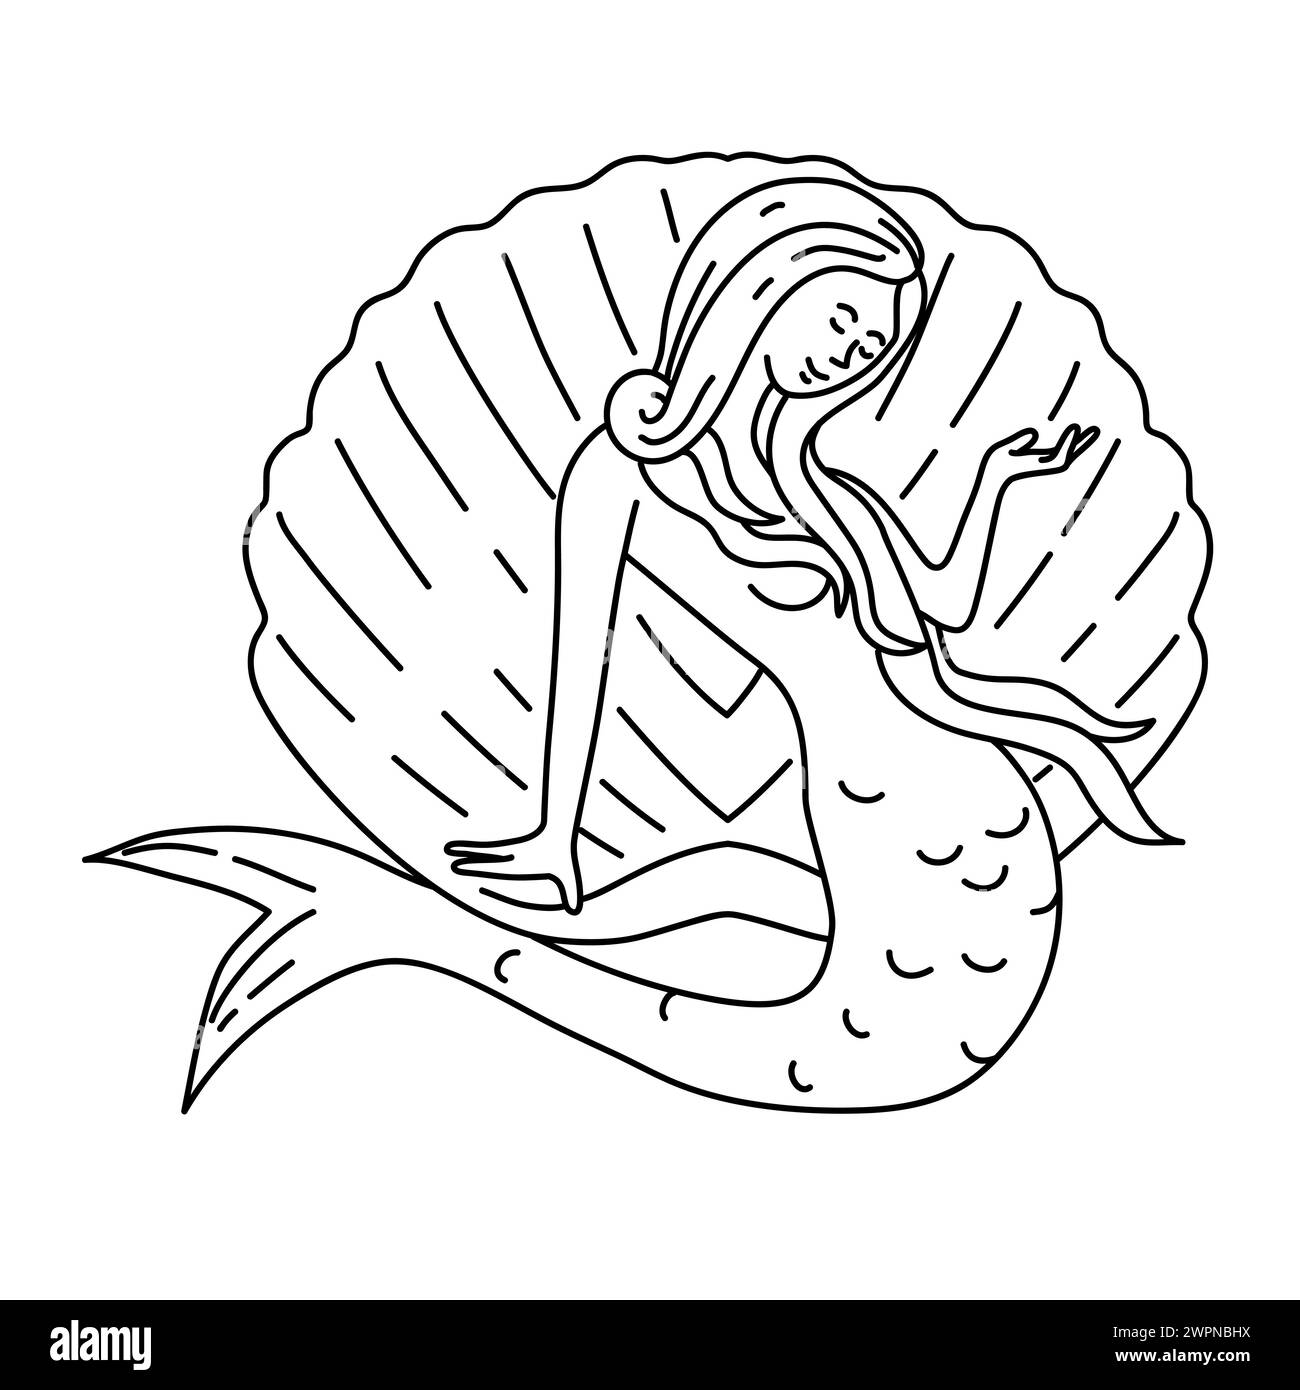 Mono-Line-Illustration einer Meerjungfrau oder Sirene mit langen, fließenden Haaren, die auf Muschelschale sitzen, von vorne gesehen, im Monoline-Line-Art-Stil. Stockfoto